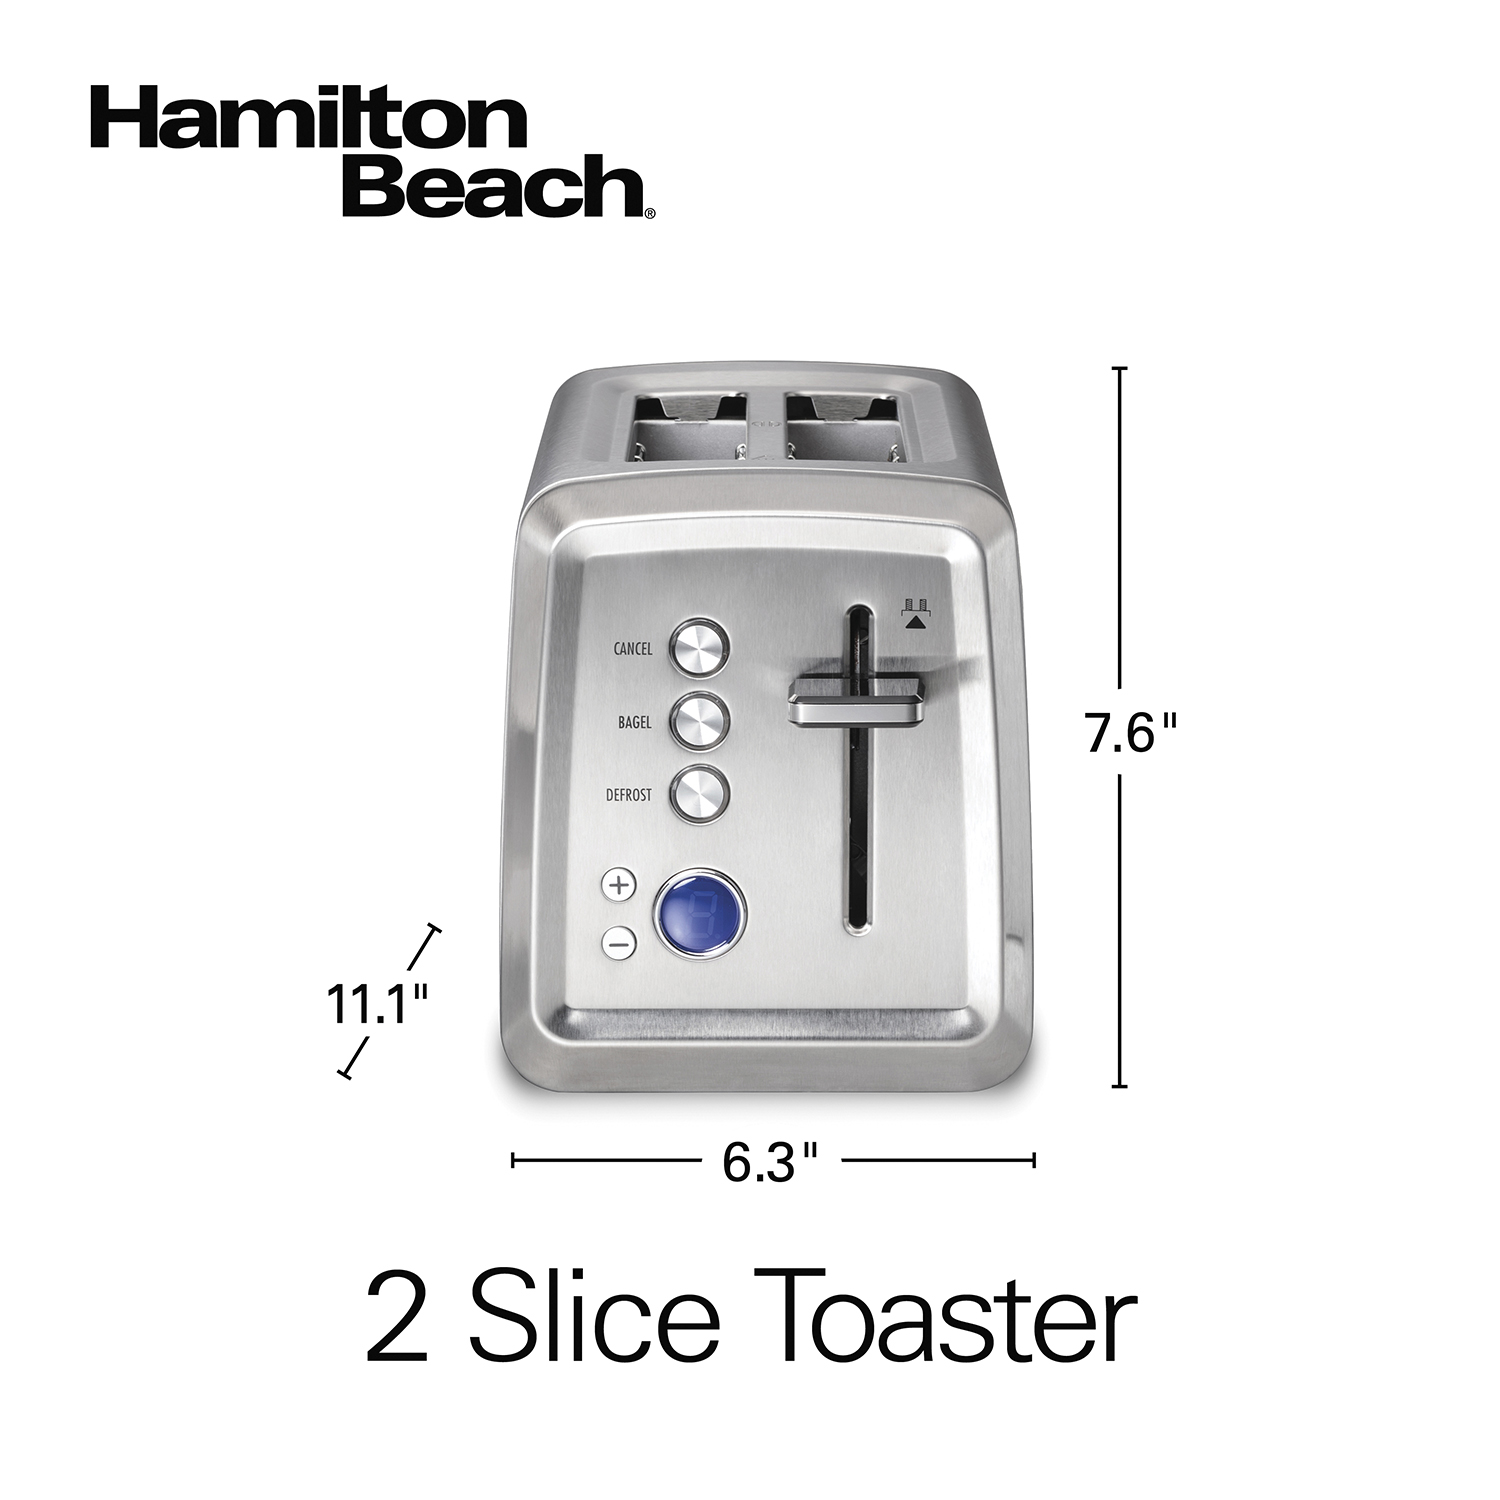 Hamilton Beach 2 Slice Toaster - Stainless Steel